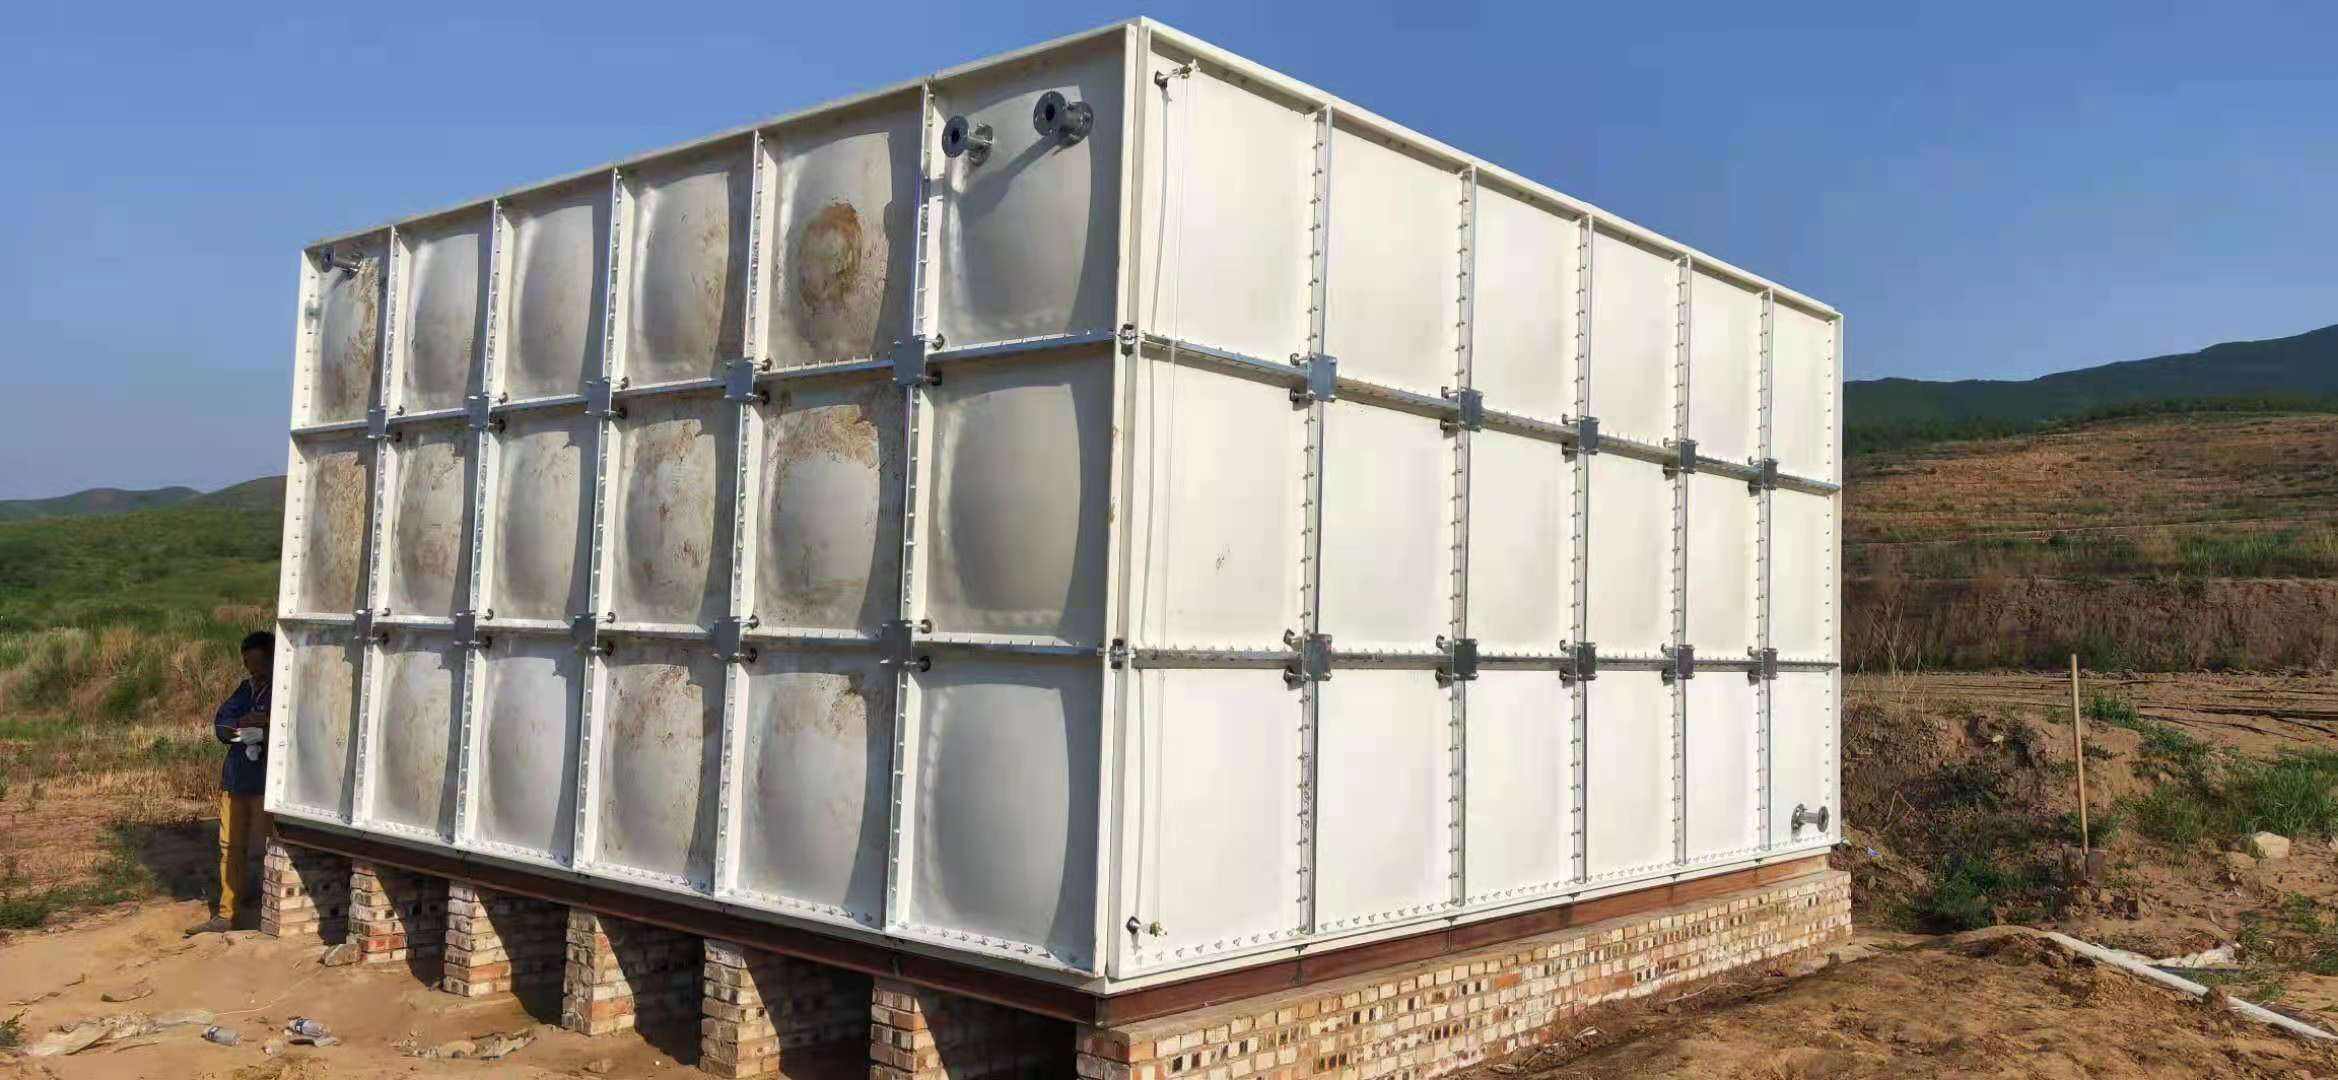 定制樓頂消防玻璃鋼水箱廠家smc玻璃鋼拼裝水箱裝配式玻璃鋼水箱價格